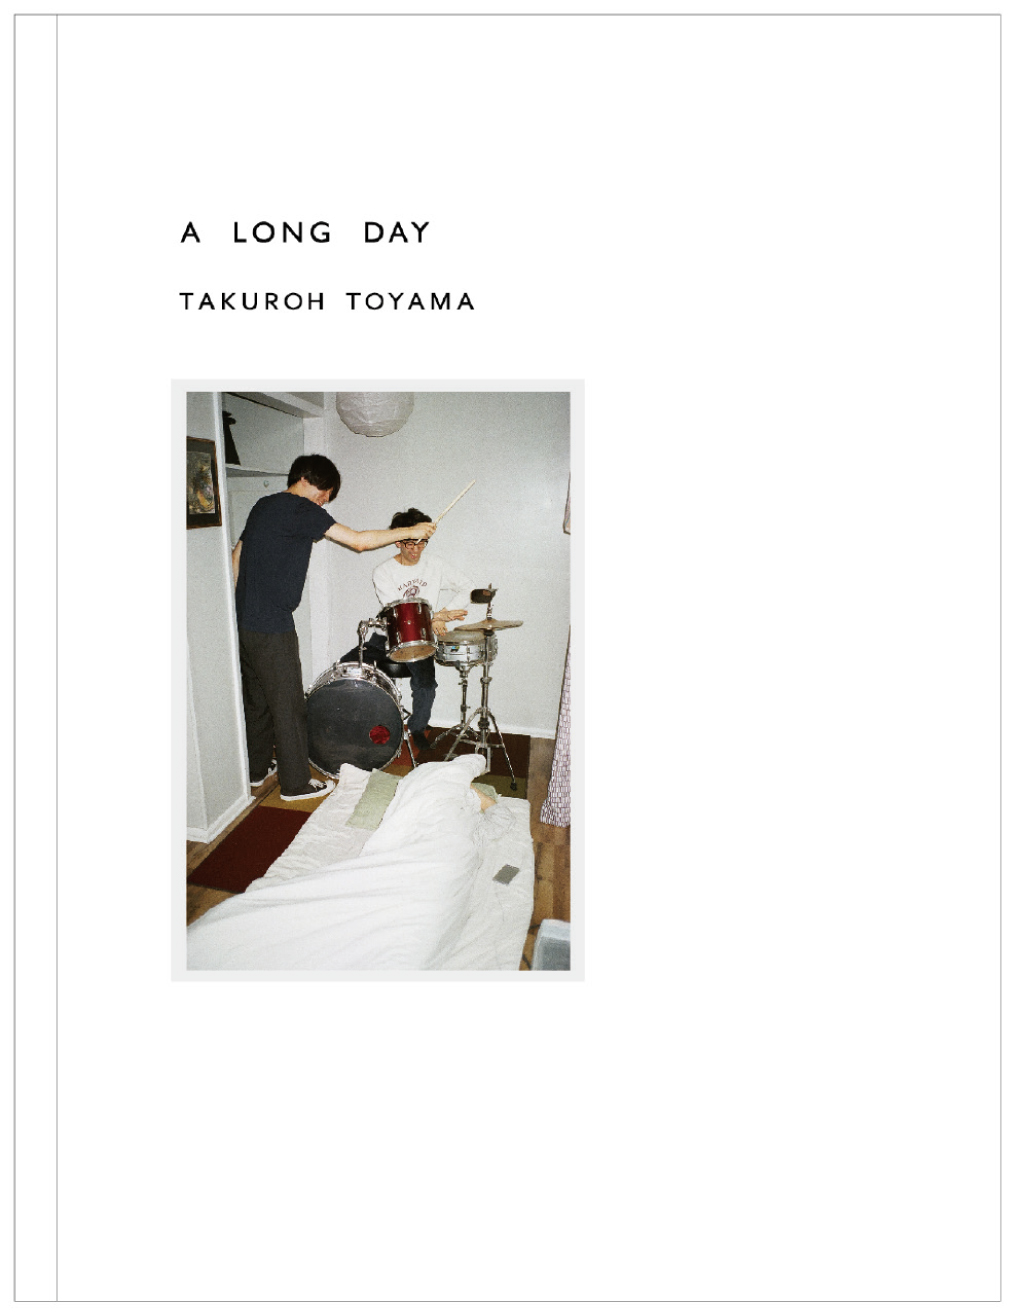 トヤマタクロウによる写真集『A LONG DAY』が発売されます。